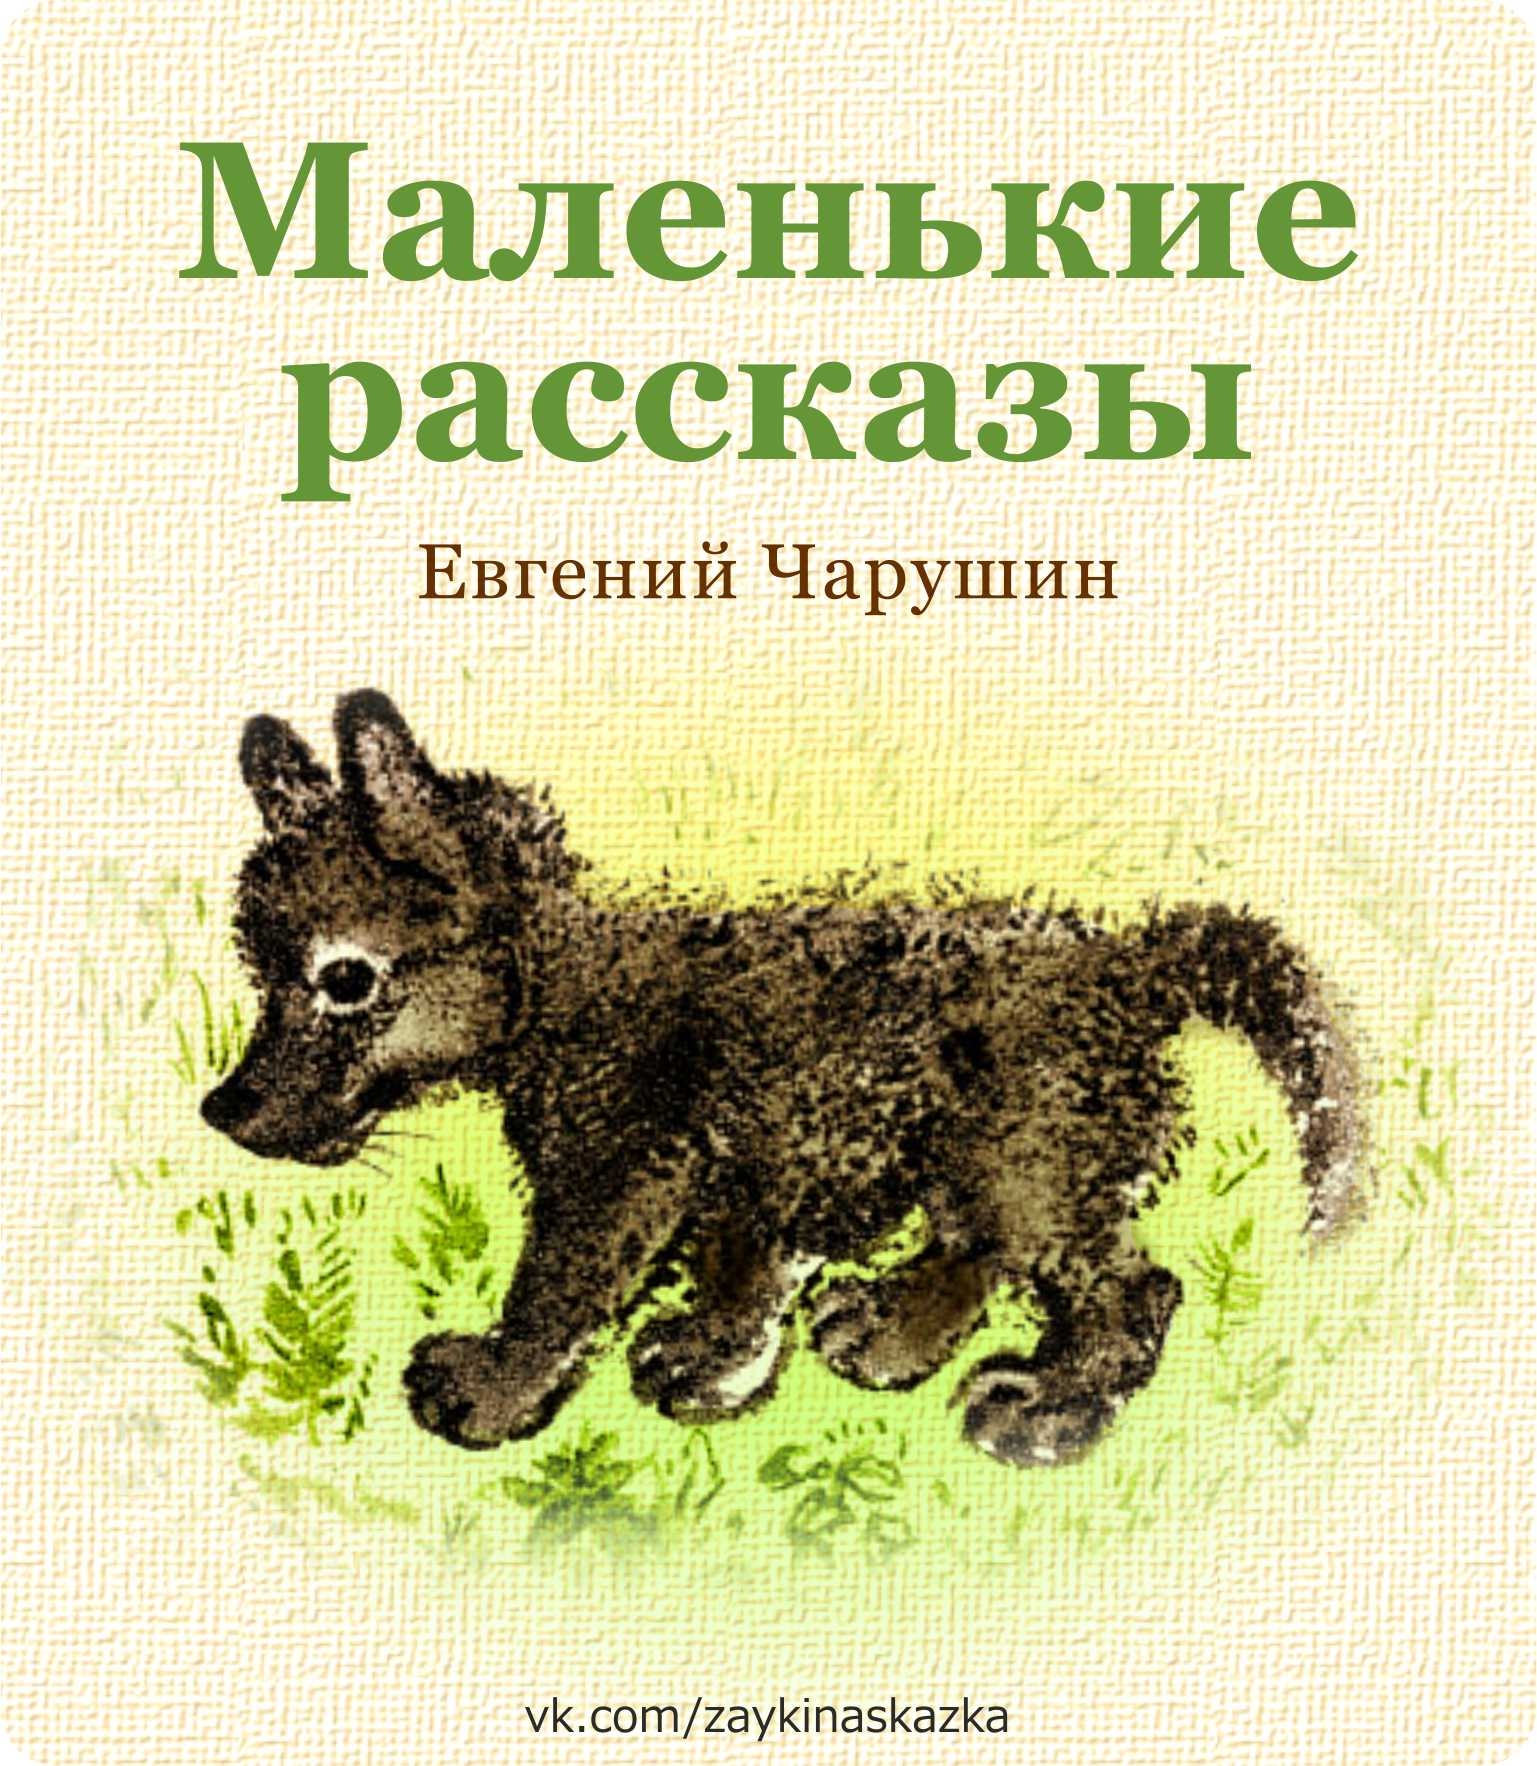 Произведения про зверей. Чарушин обложки книг для детей.